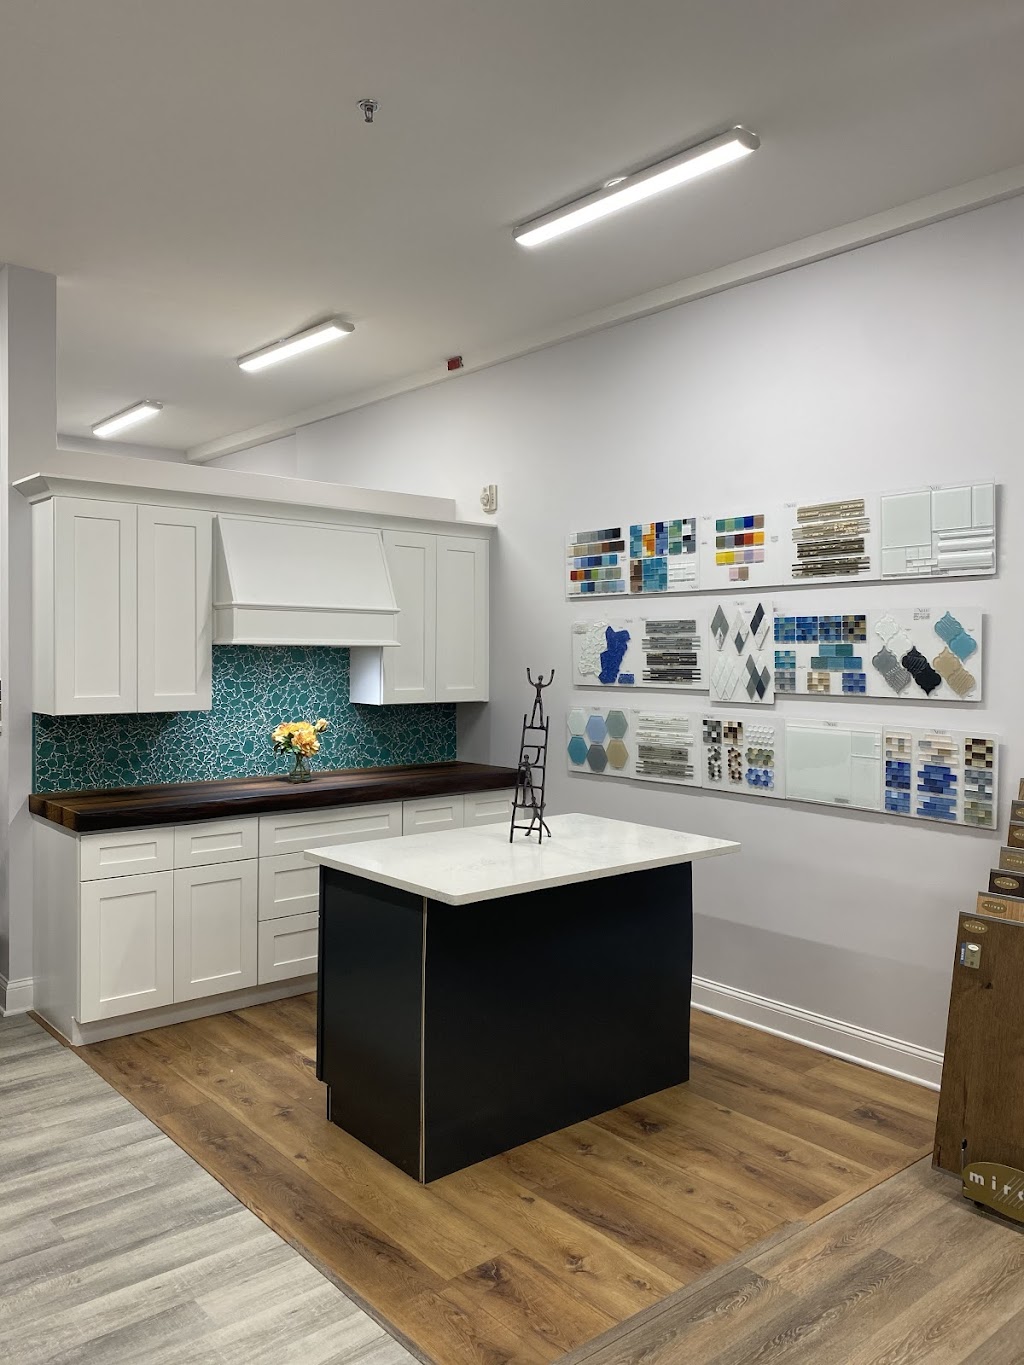 MisterM Home Design Center | 177 Locust Ave Unit 5, West Long Branch, NJ 07764 | Phone: (732) 222-7500